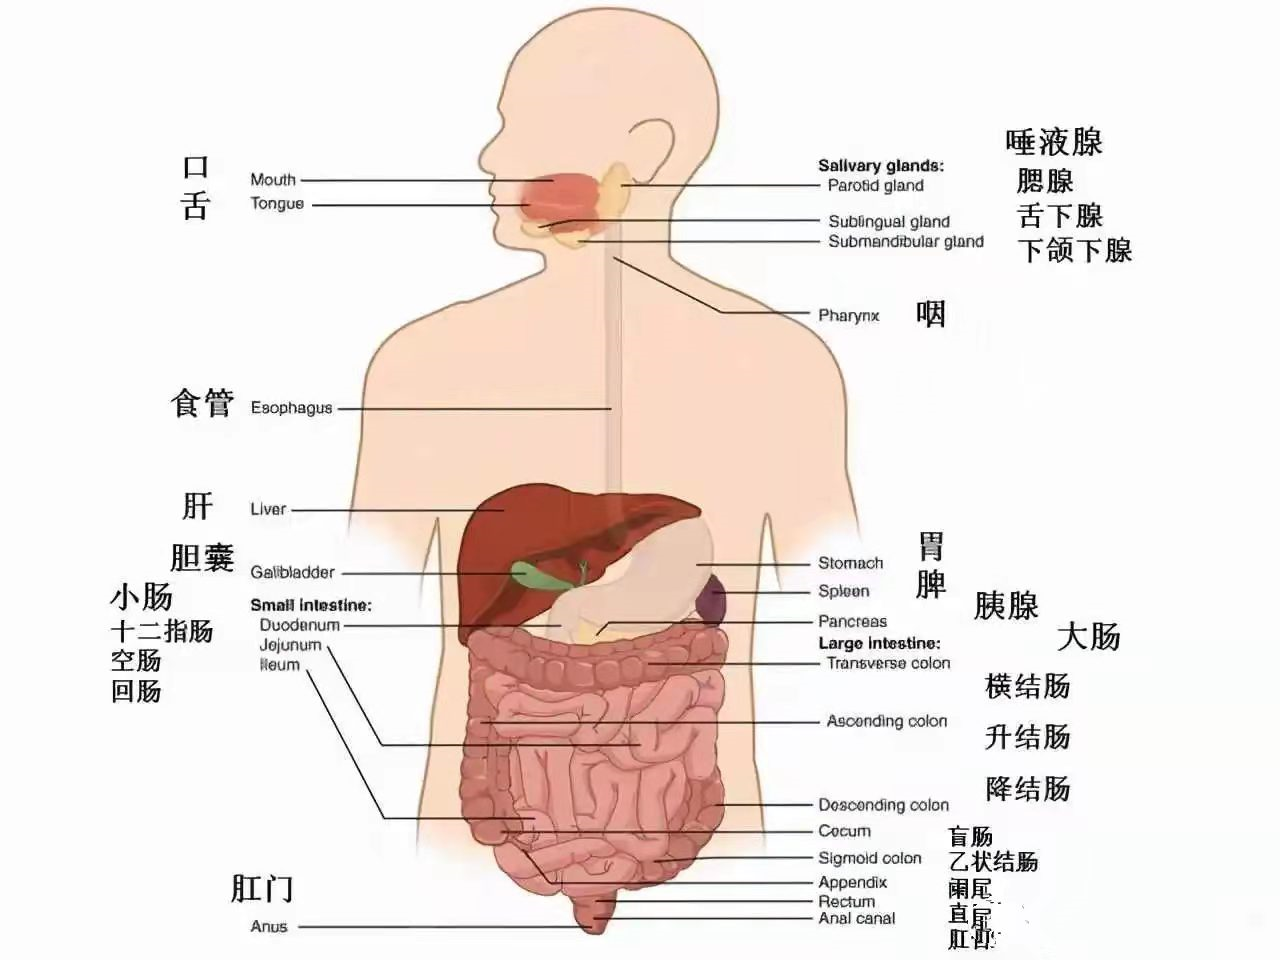 一张腹部地图,告诉你腹部疼痛对应哪个器官,建议收藏,终身有益